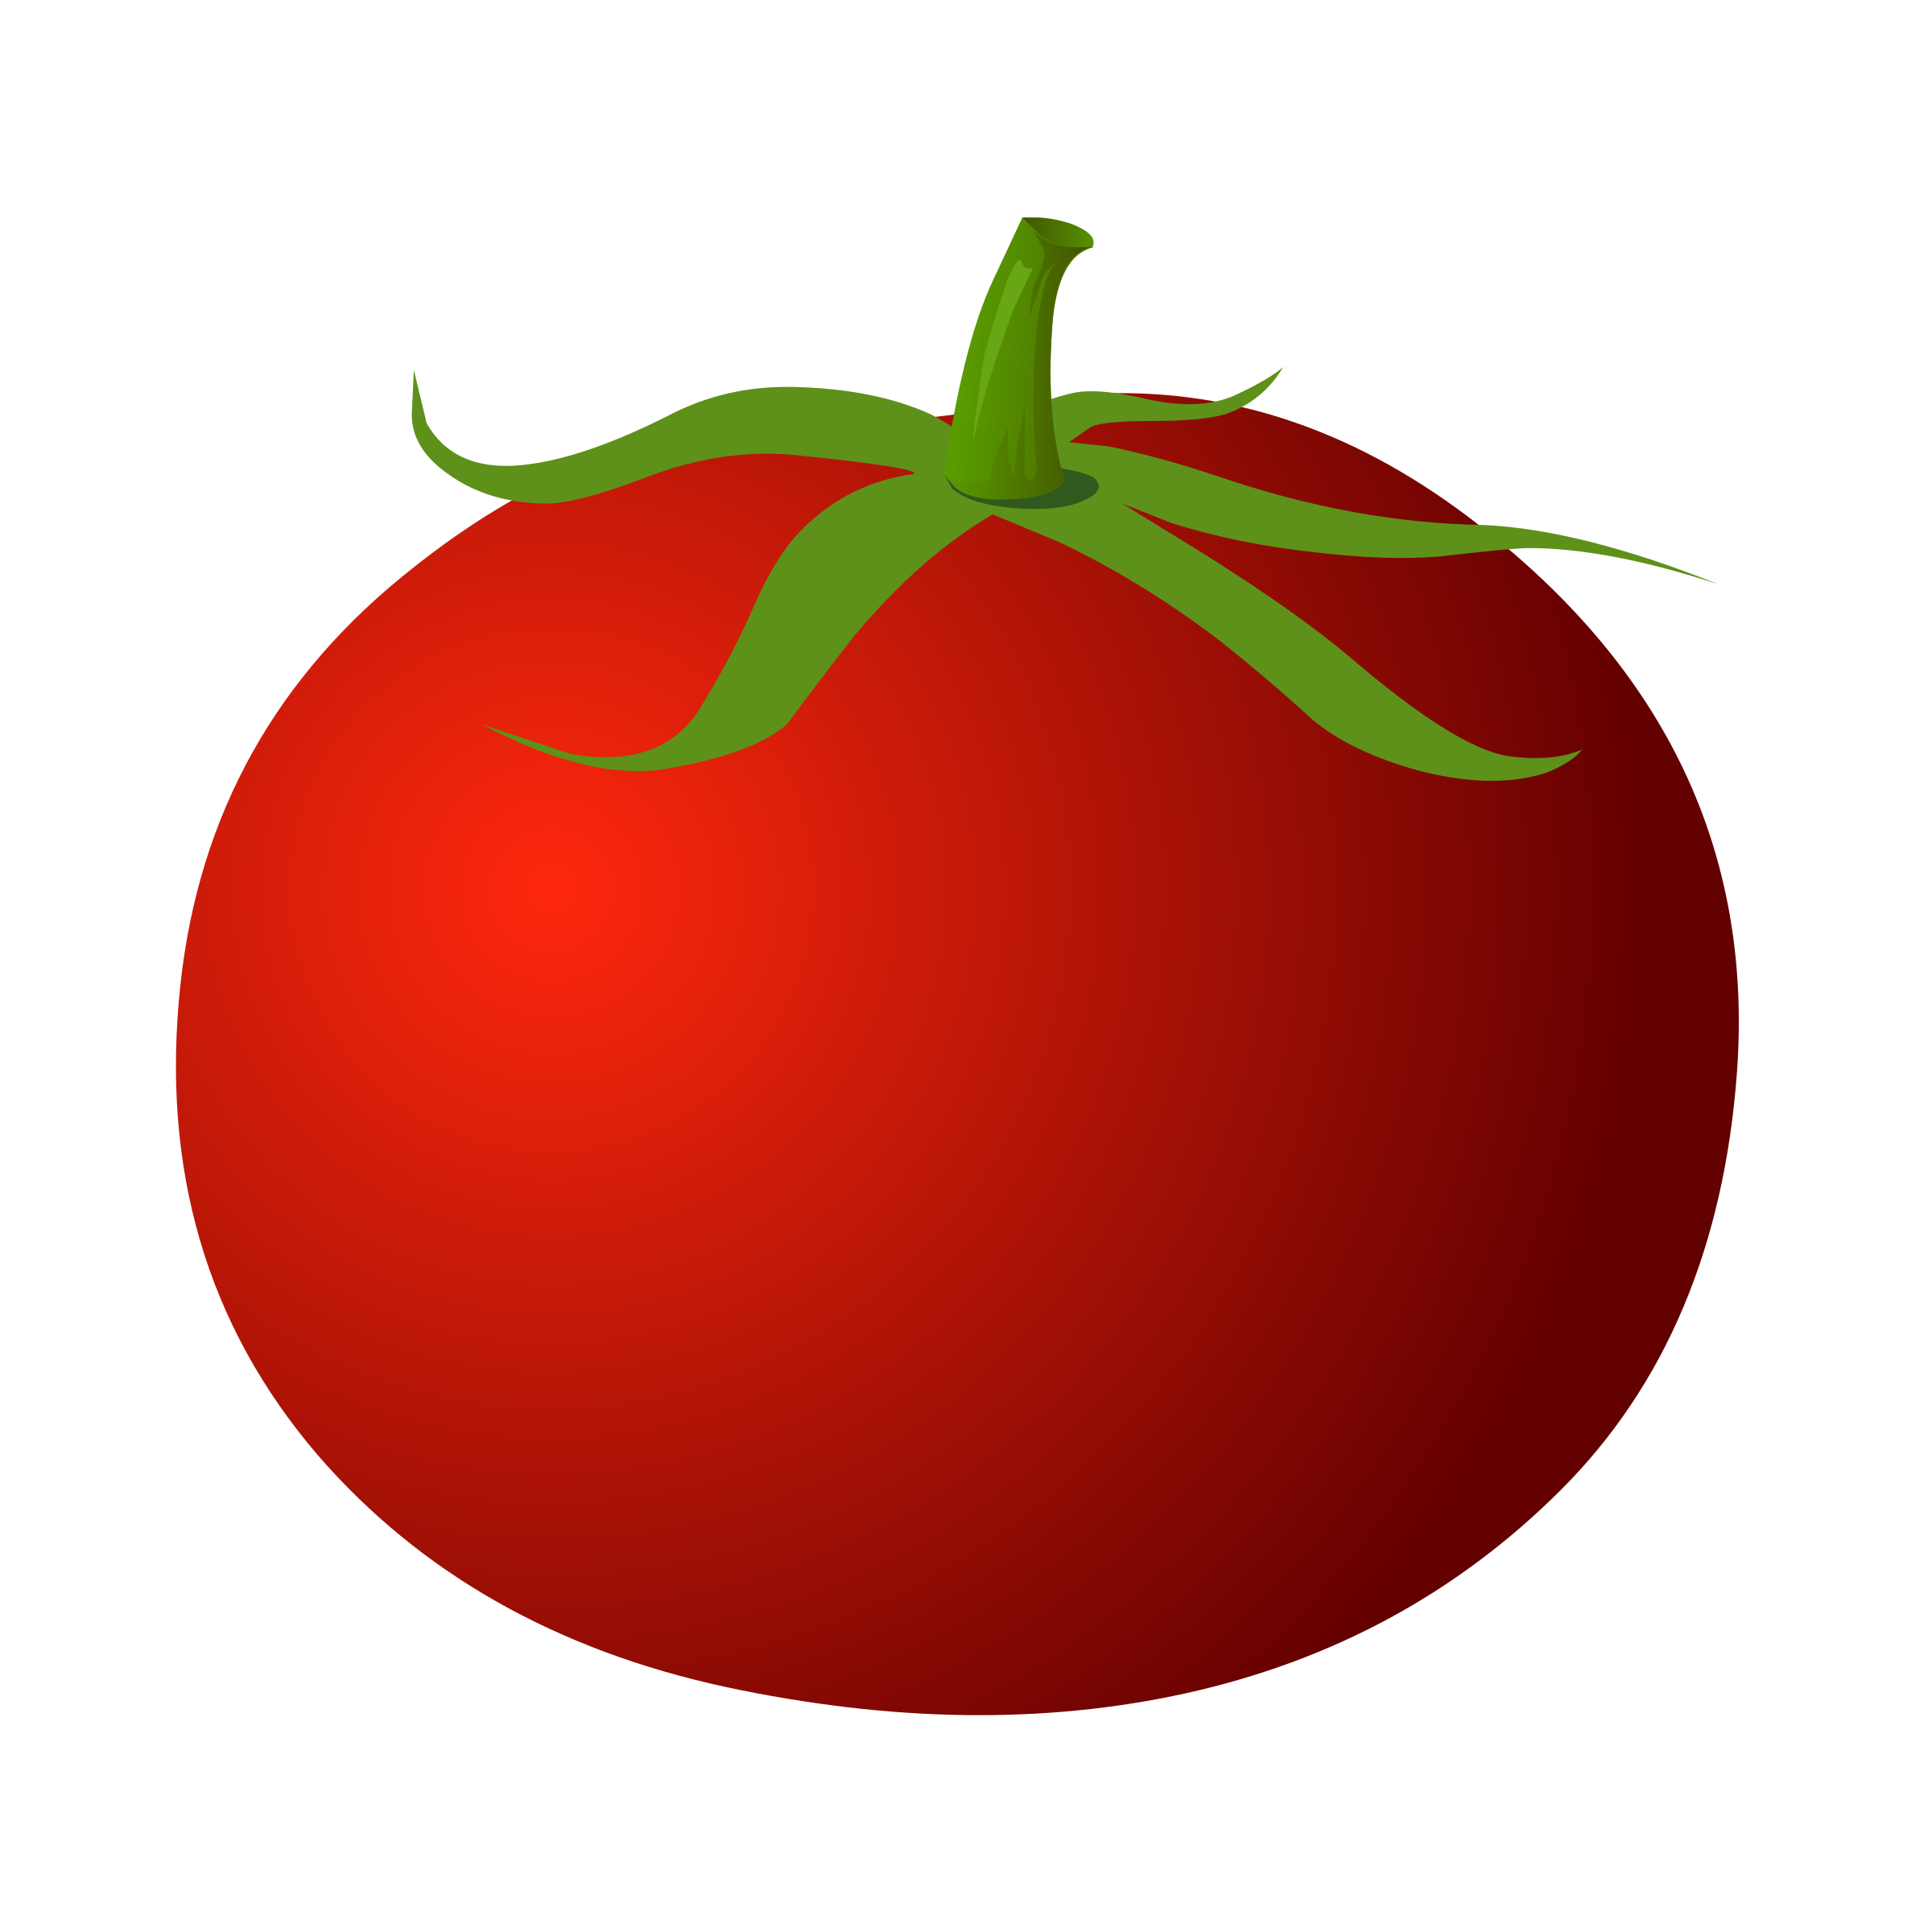 đồng hồ quả cà chua